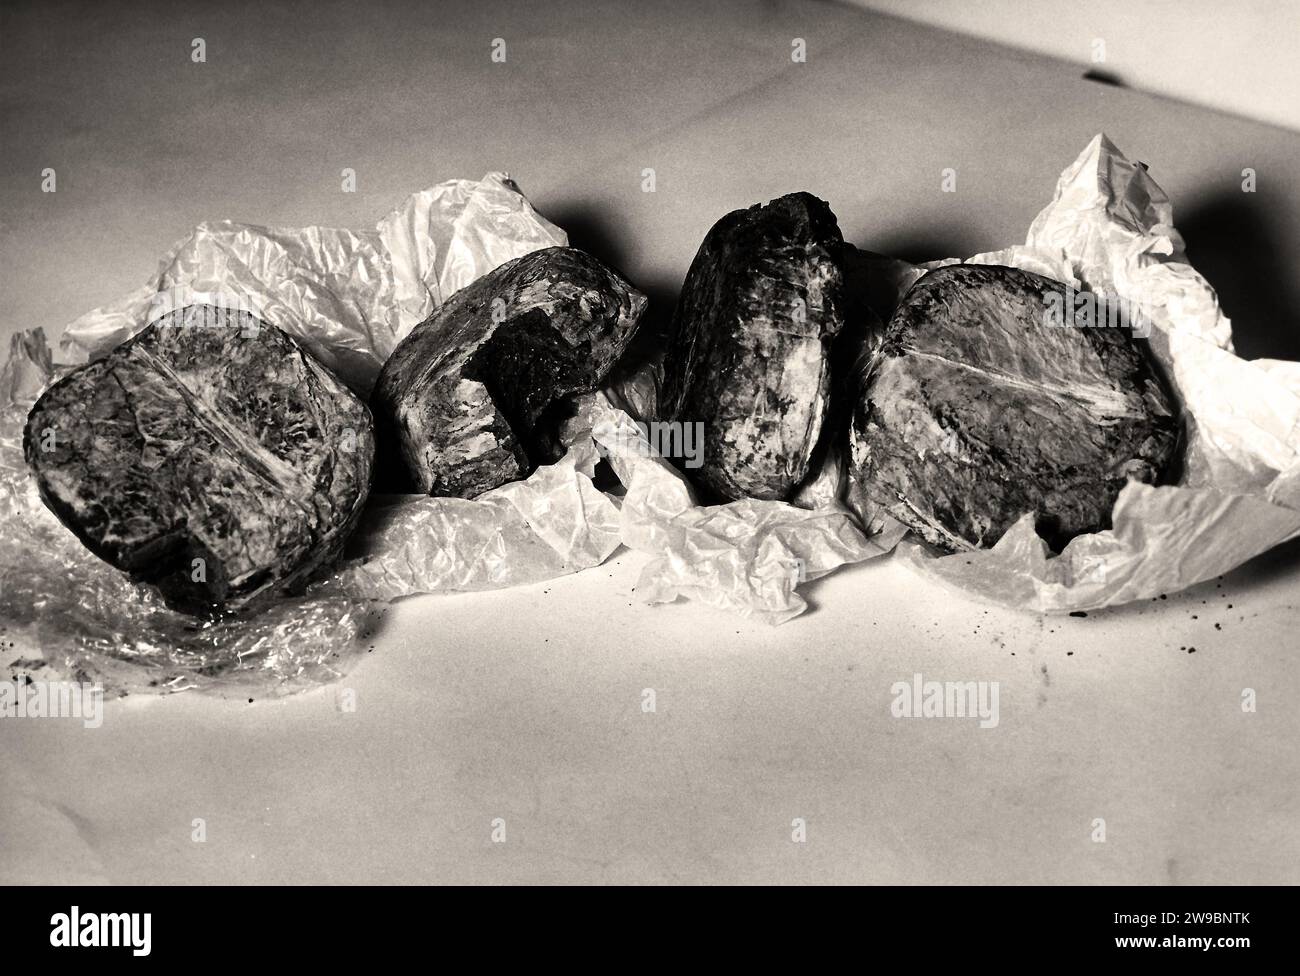 ÉCHANTILLONS D'OPIUM - ONU - GRÈCE - 1954 - échantillons d'opium en provenance de Grèce, photographiés dans le cadre des travaux des Nations Unies, Division Narcoti Banque D'Images